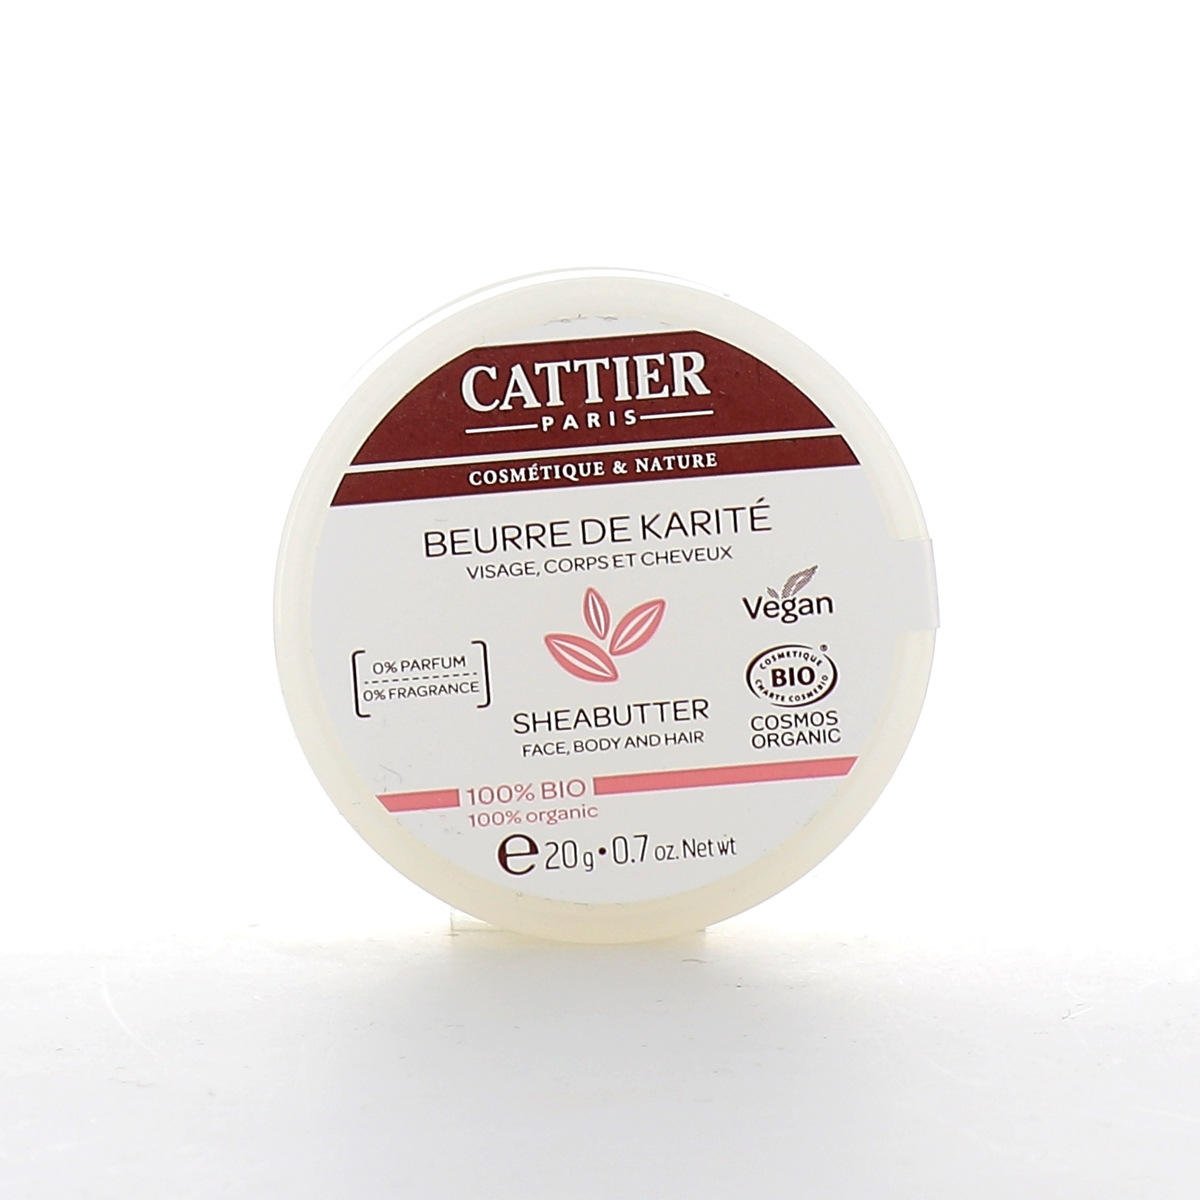 Beurre de karité 100% Bio Cattier